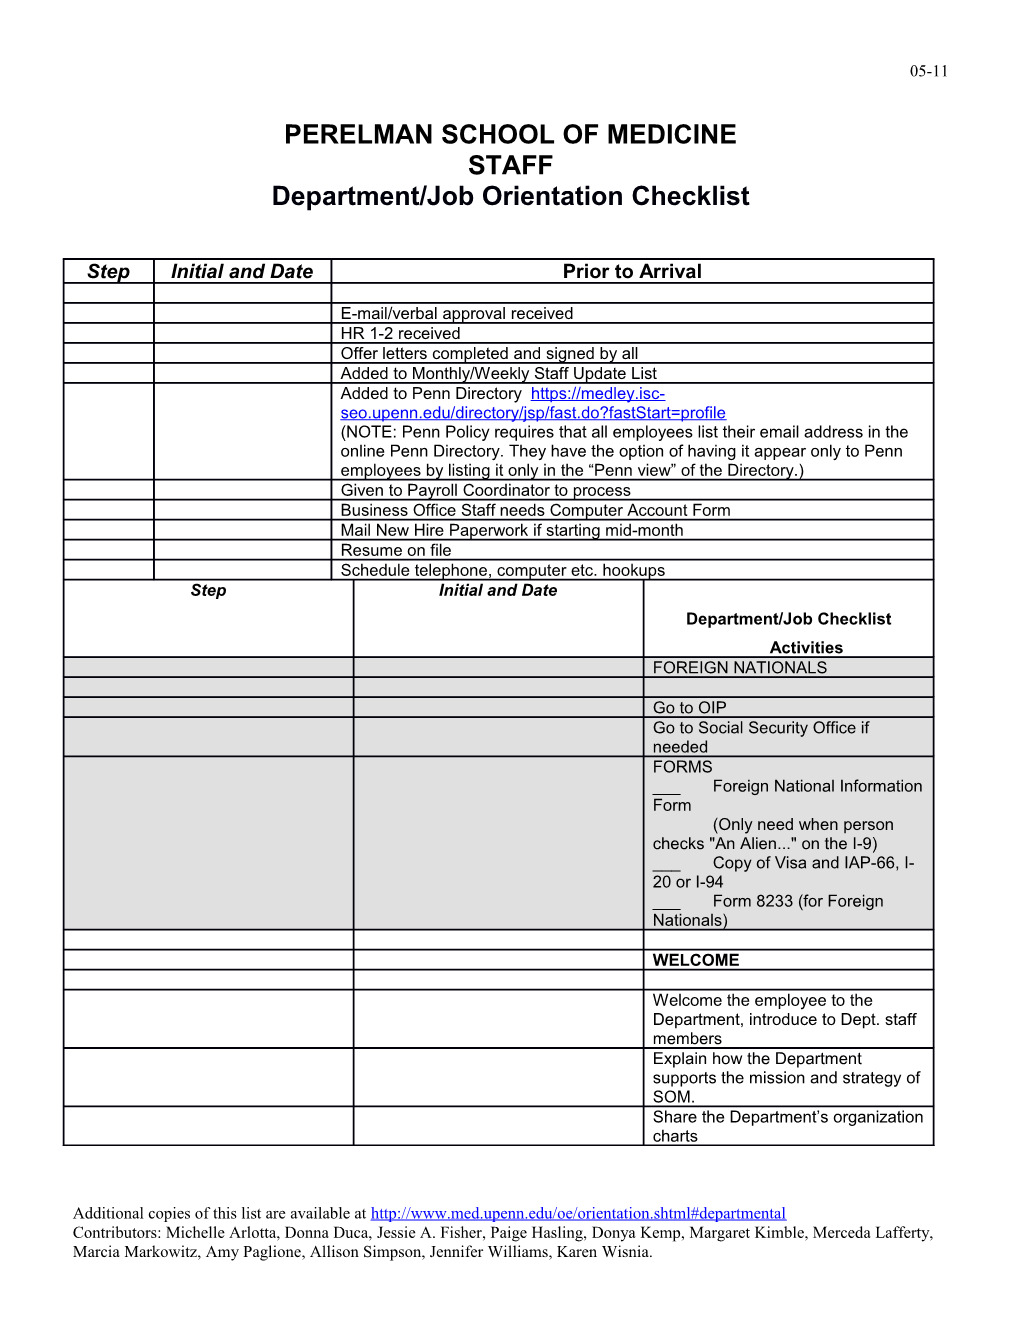 Department/Job Orientation Checklist